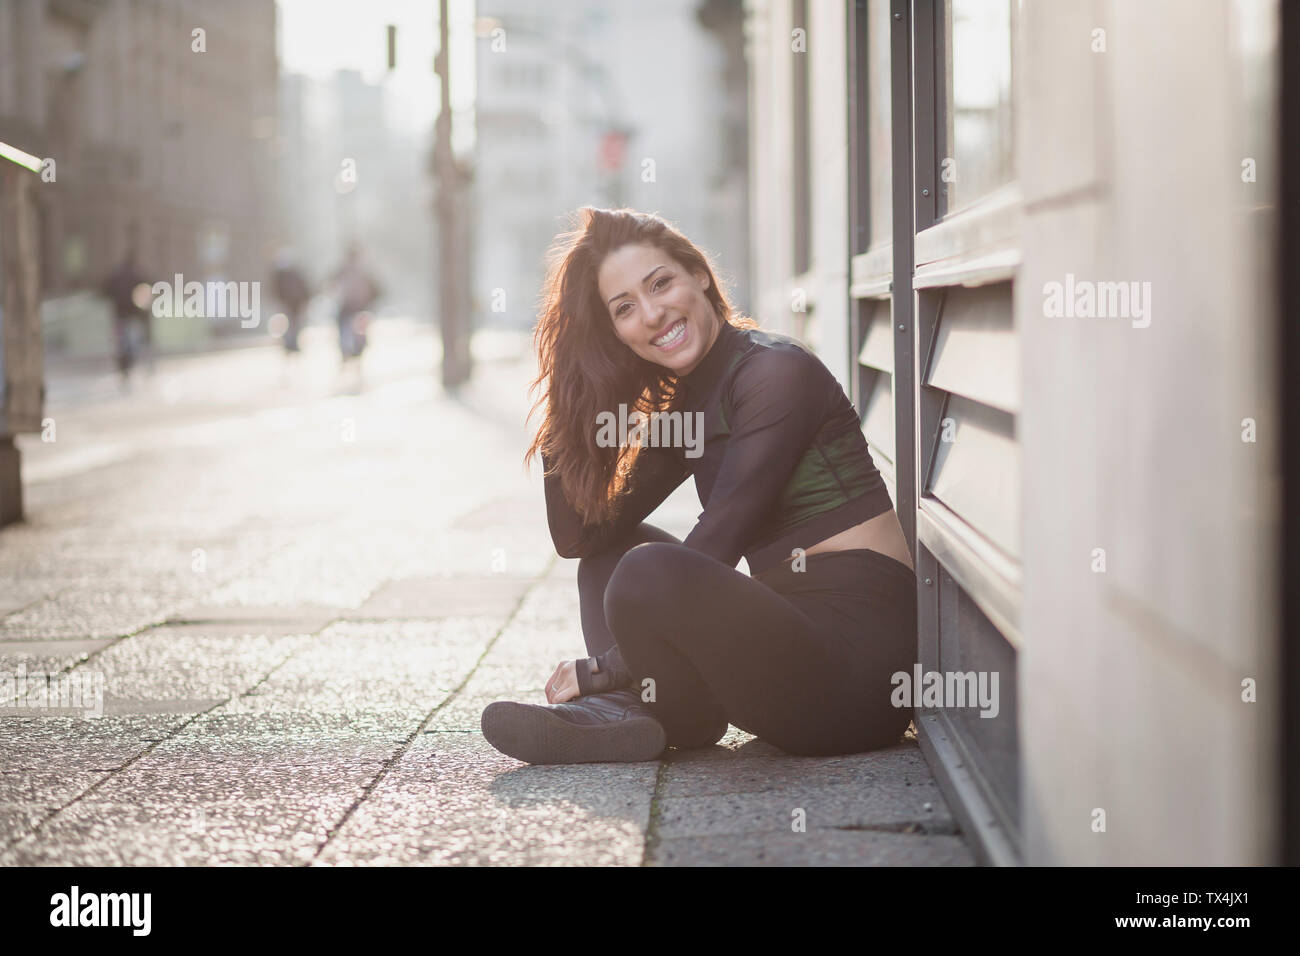 Portrait of happy sportive jeune femme assise sur le sol dans la ville Banque D'Images